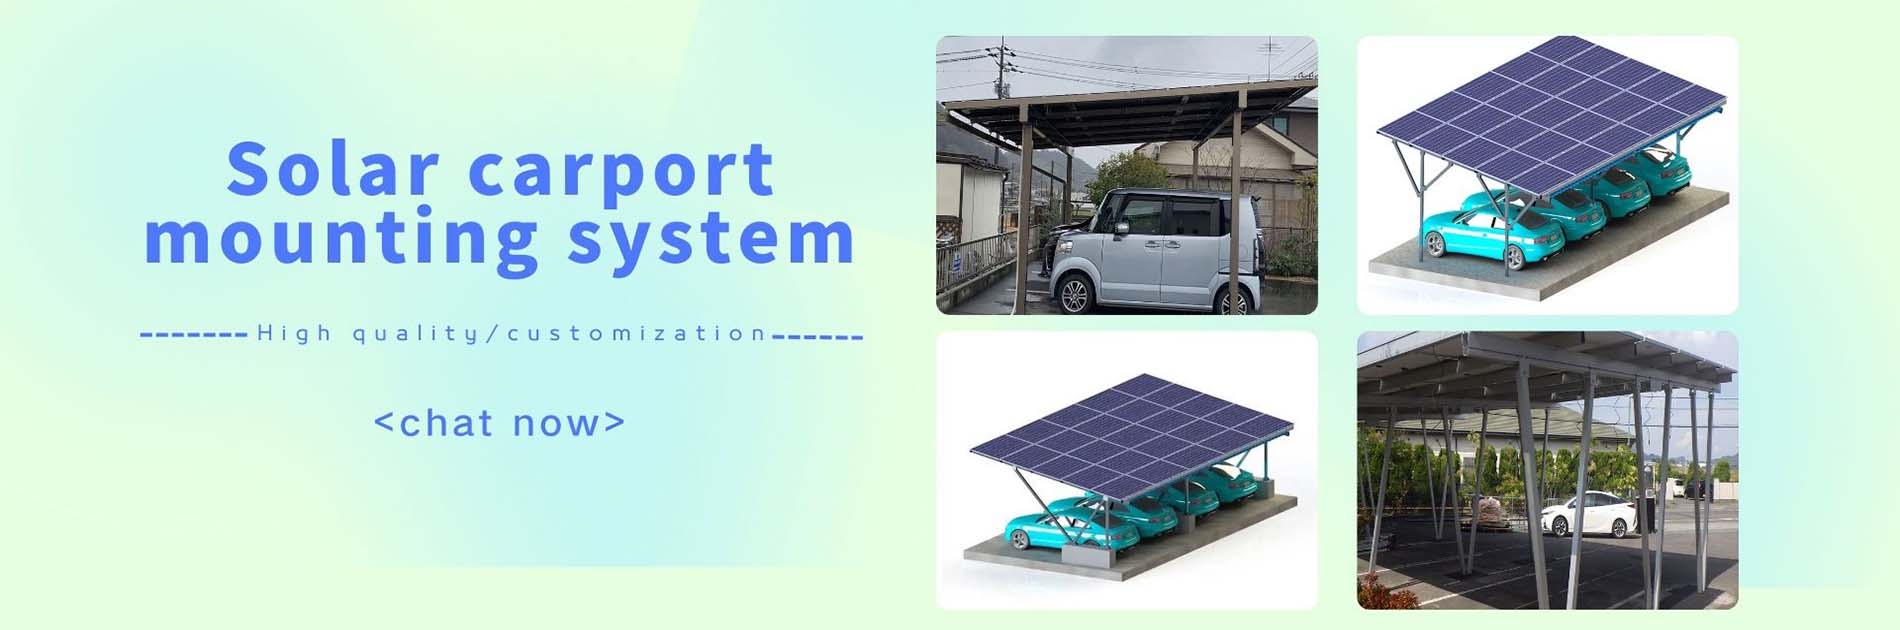 sistema de montaje de cochera solar